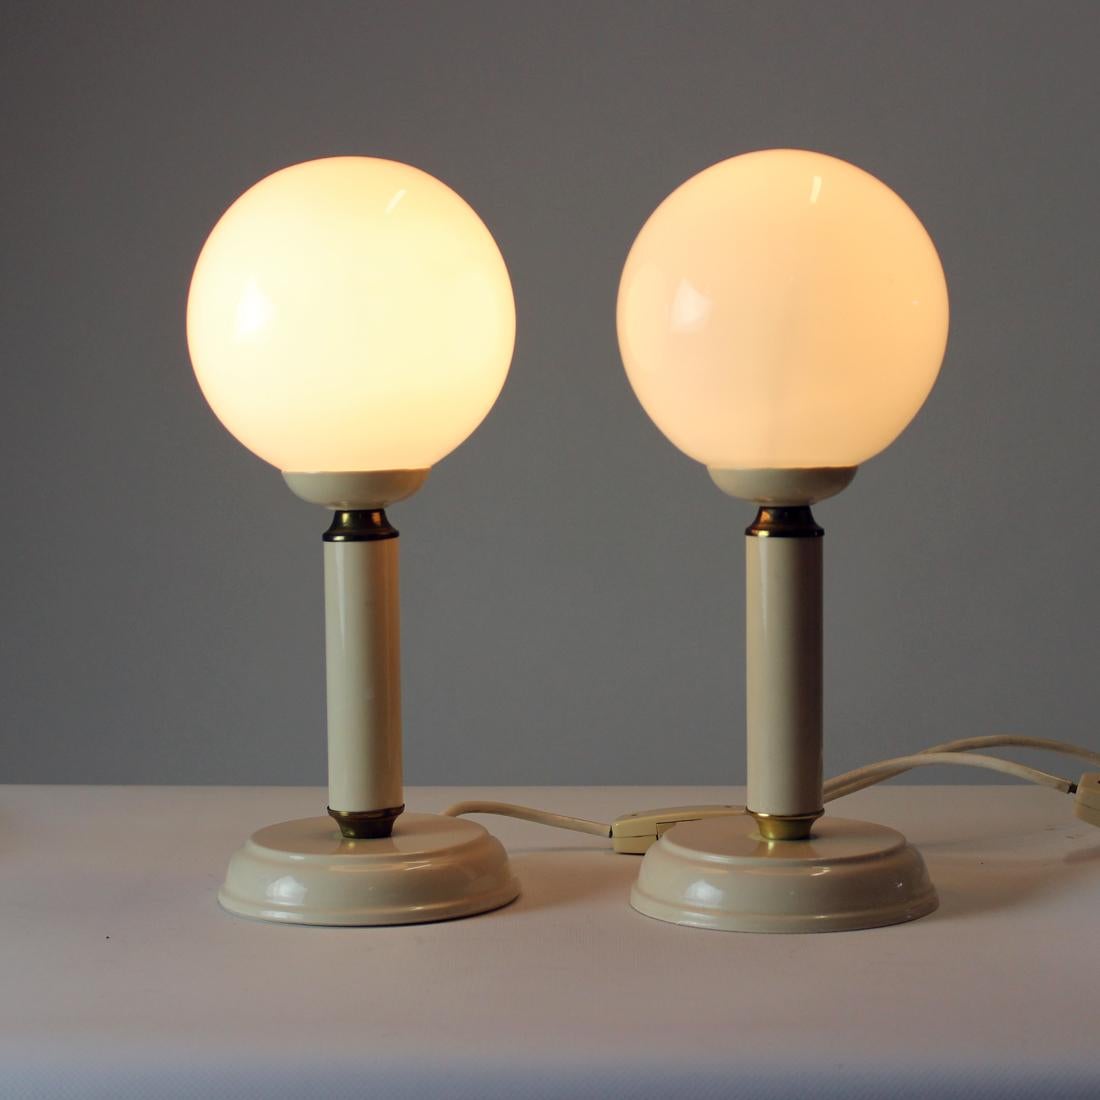 Ensemble de deux élégantes lampes de table, produites en Tchécoslovaquie dans les années 1970. Les lampes reposent sur une base métallique en glaçure de couleur crème avec des détails en laiton. Le bouclier est fabriqué à partir d'un verre opalin